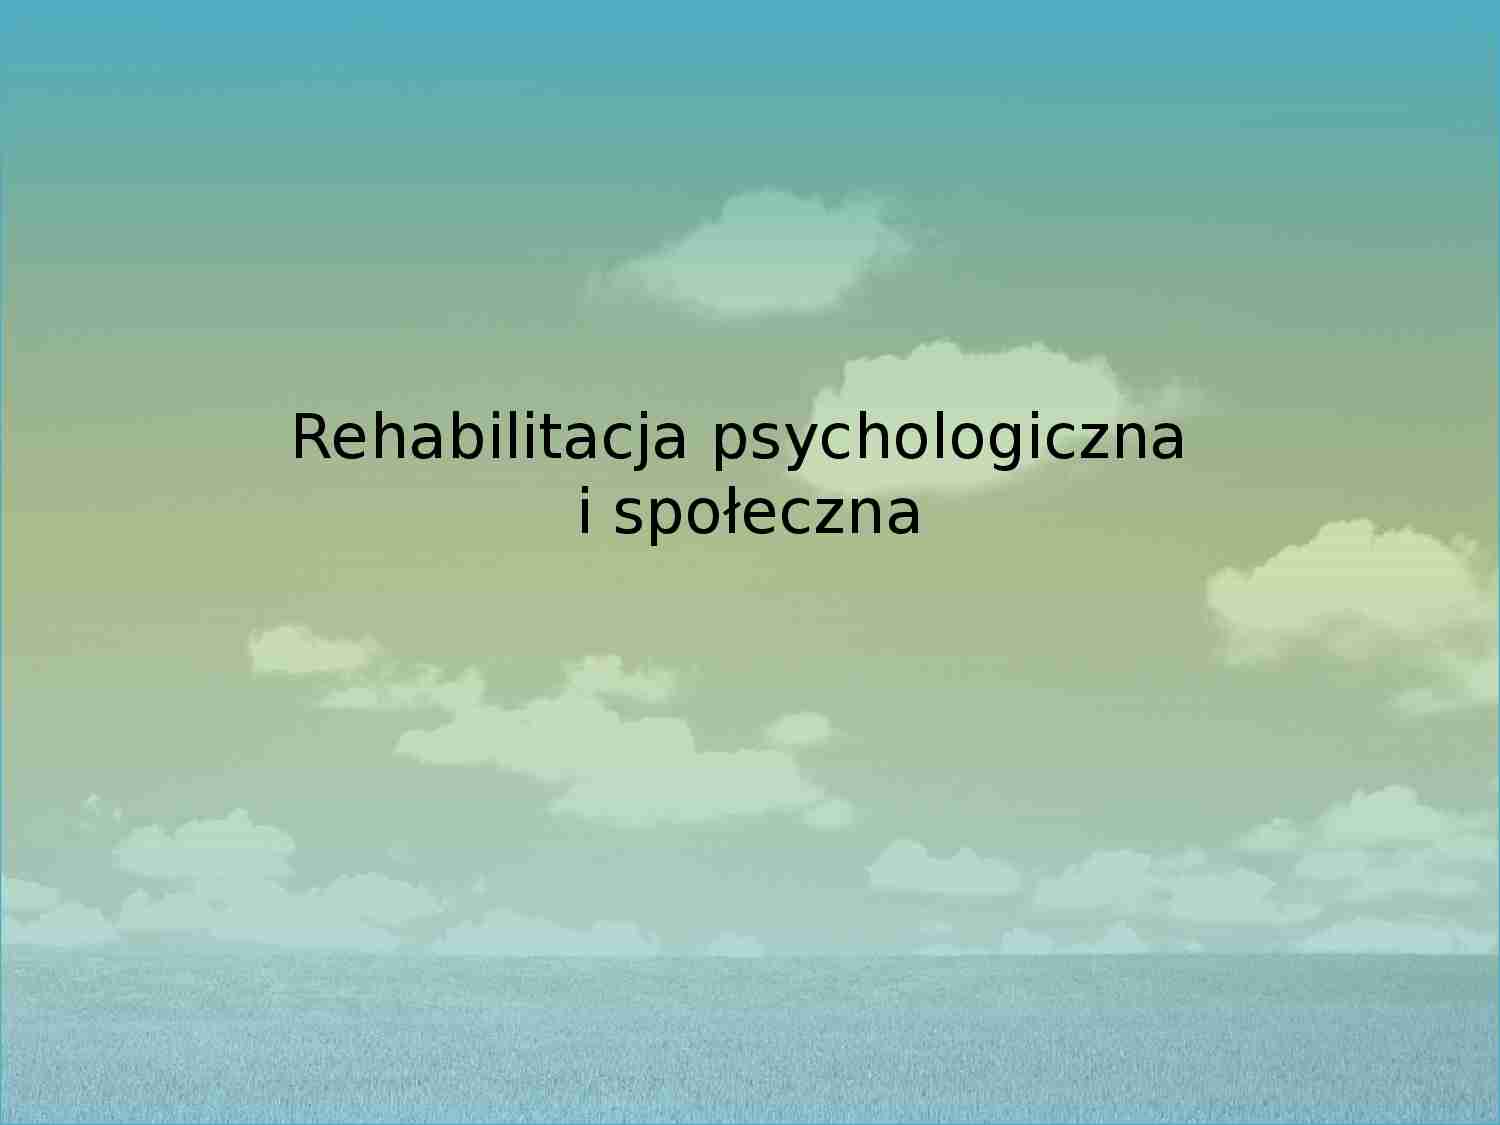 Rehabilitacja psychologiczna i społeczna - strona 1